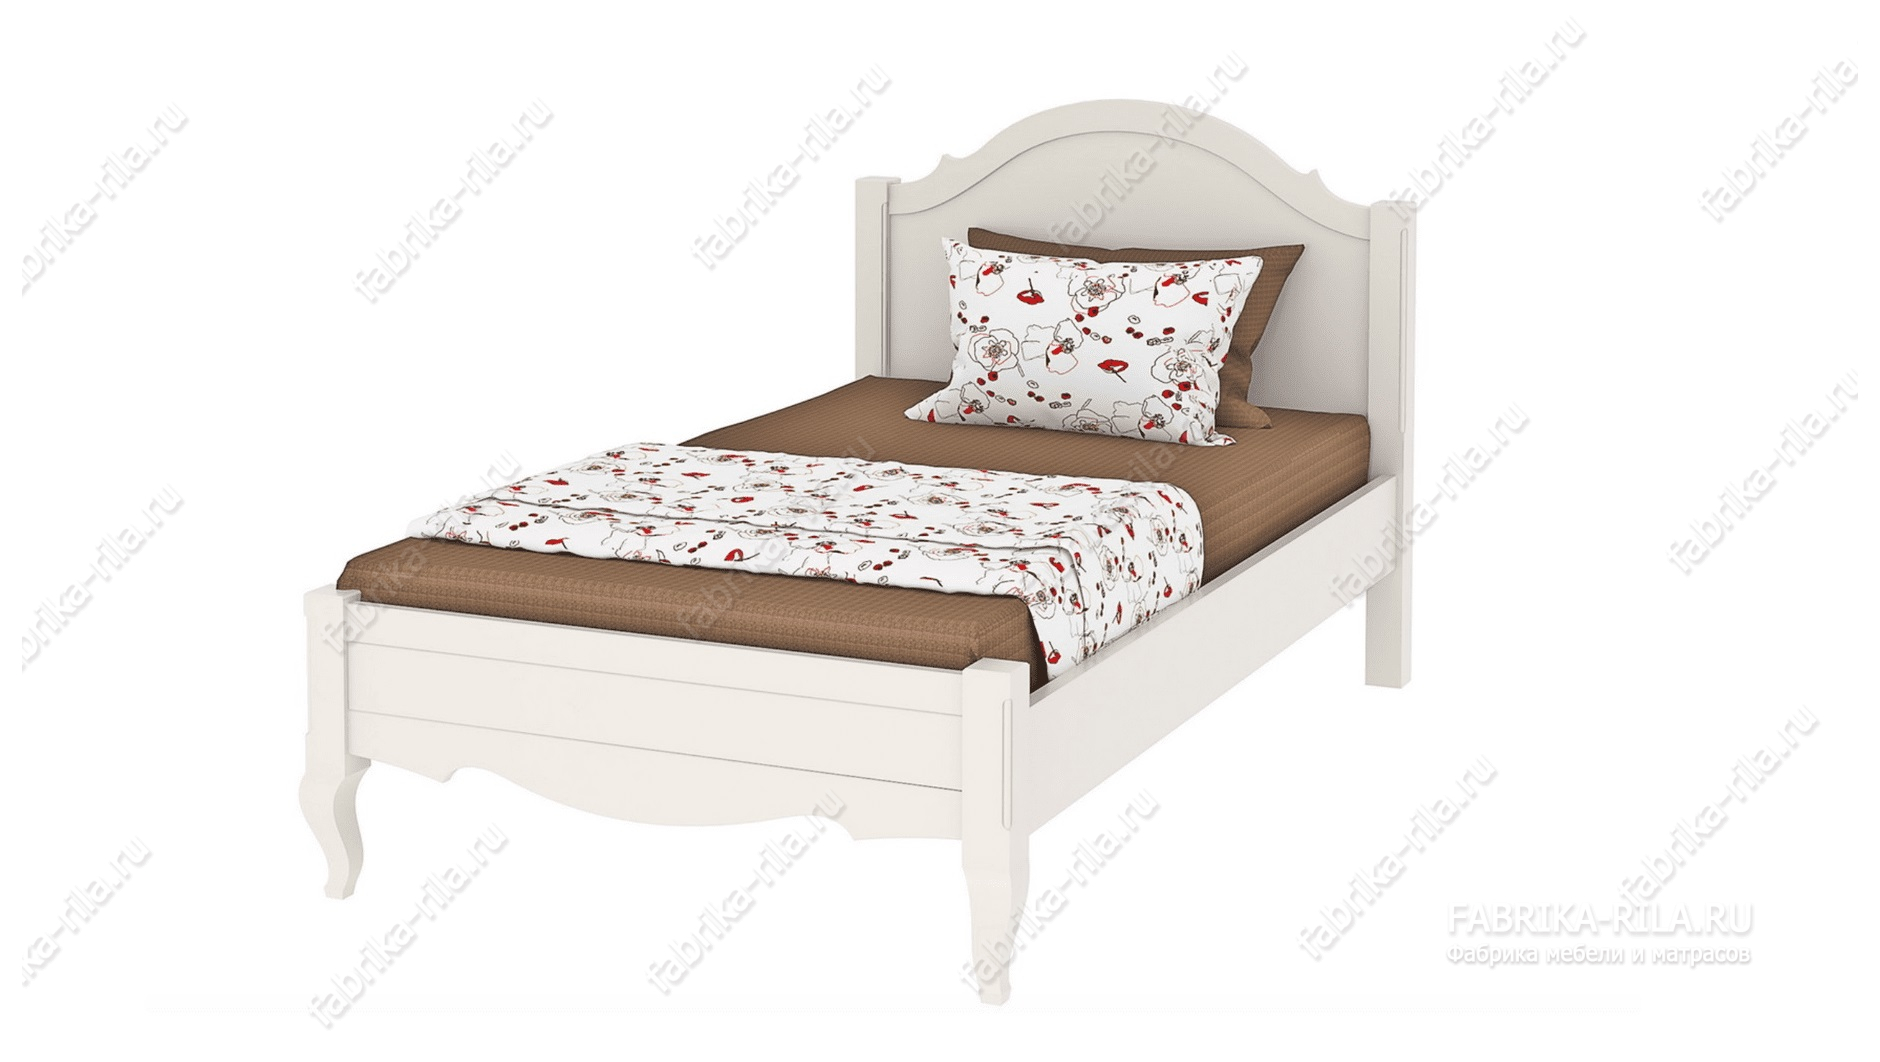 Кровать Palmira-1 — 140x200 см. из сосны